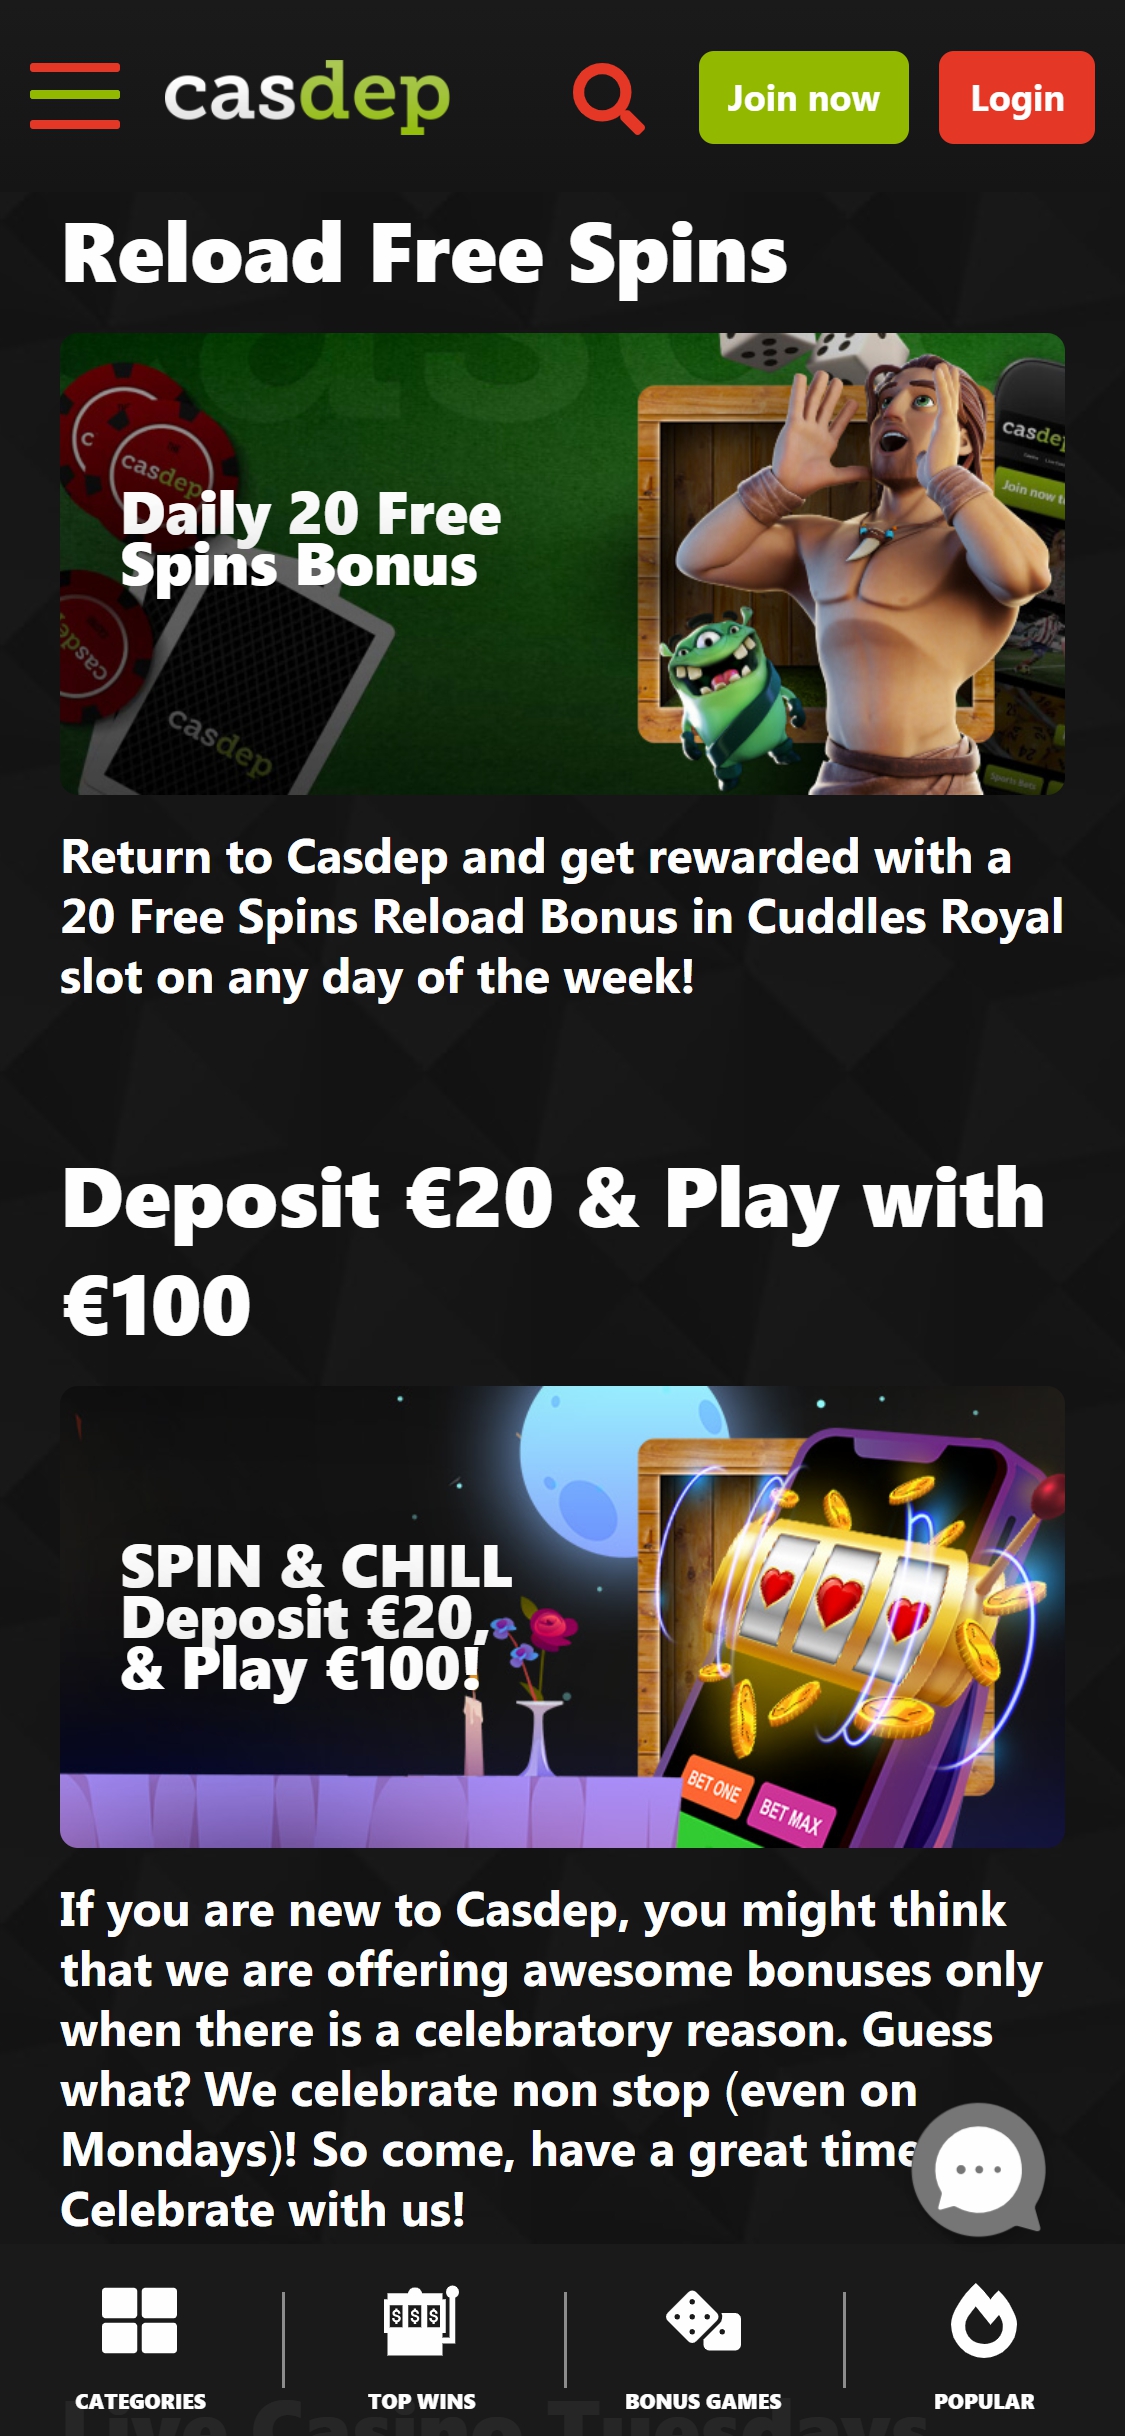 Casdep Casino Mobile No Deposit Bonus Review